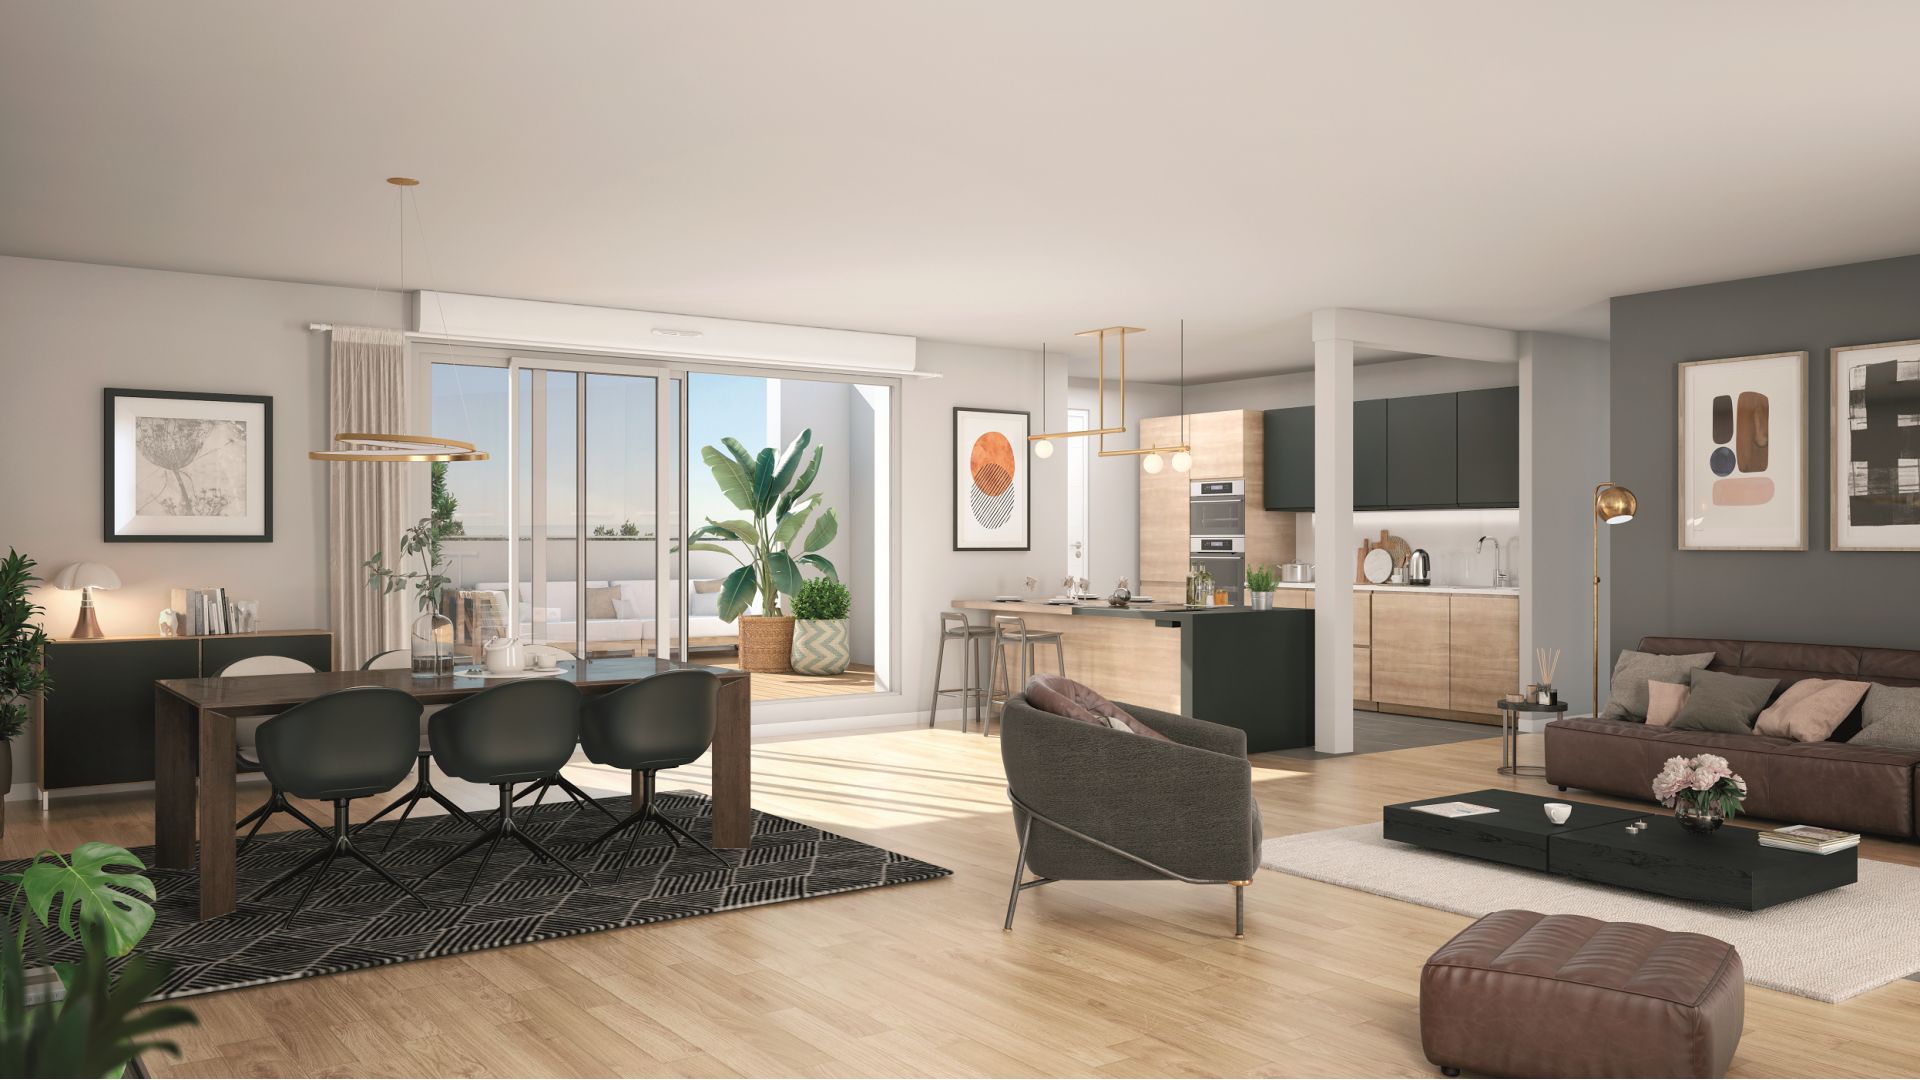 Greencity Immobilier - Résidence O Brienne - achat appartements neufs du T1 au T4 - Toulouse 31000 - vue intérieure